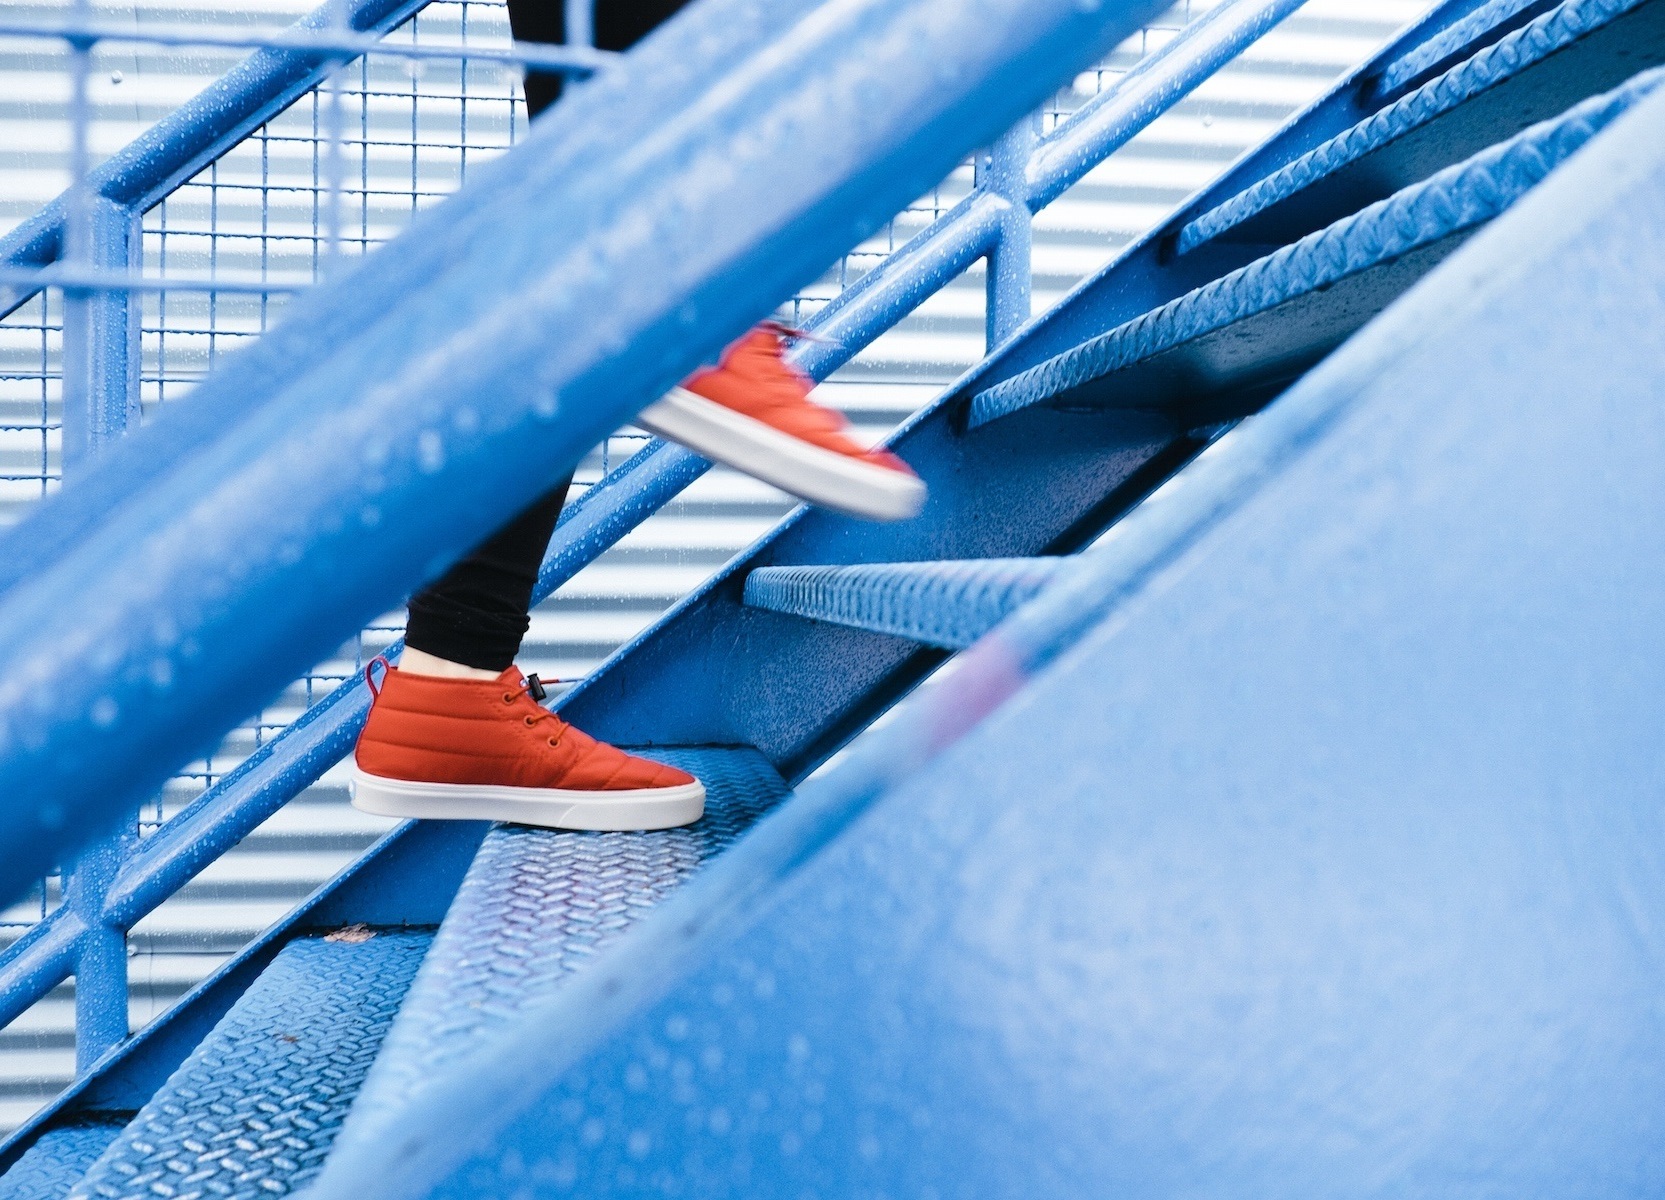 Vorankommen durch eigene Leistung - Person mit orangenen Schuhen, die zügig eine blaue Treppe hinaufsteigt